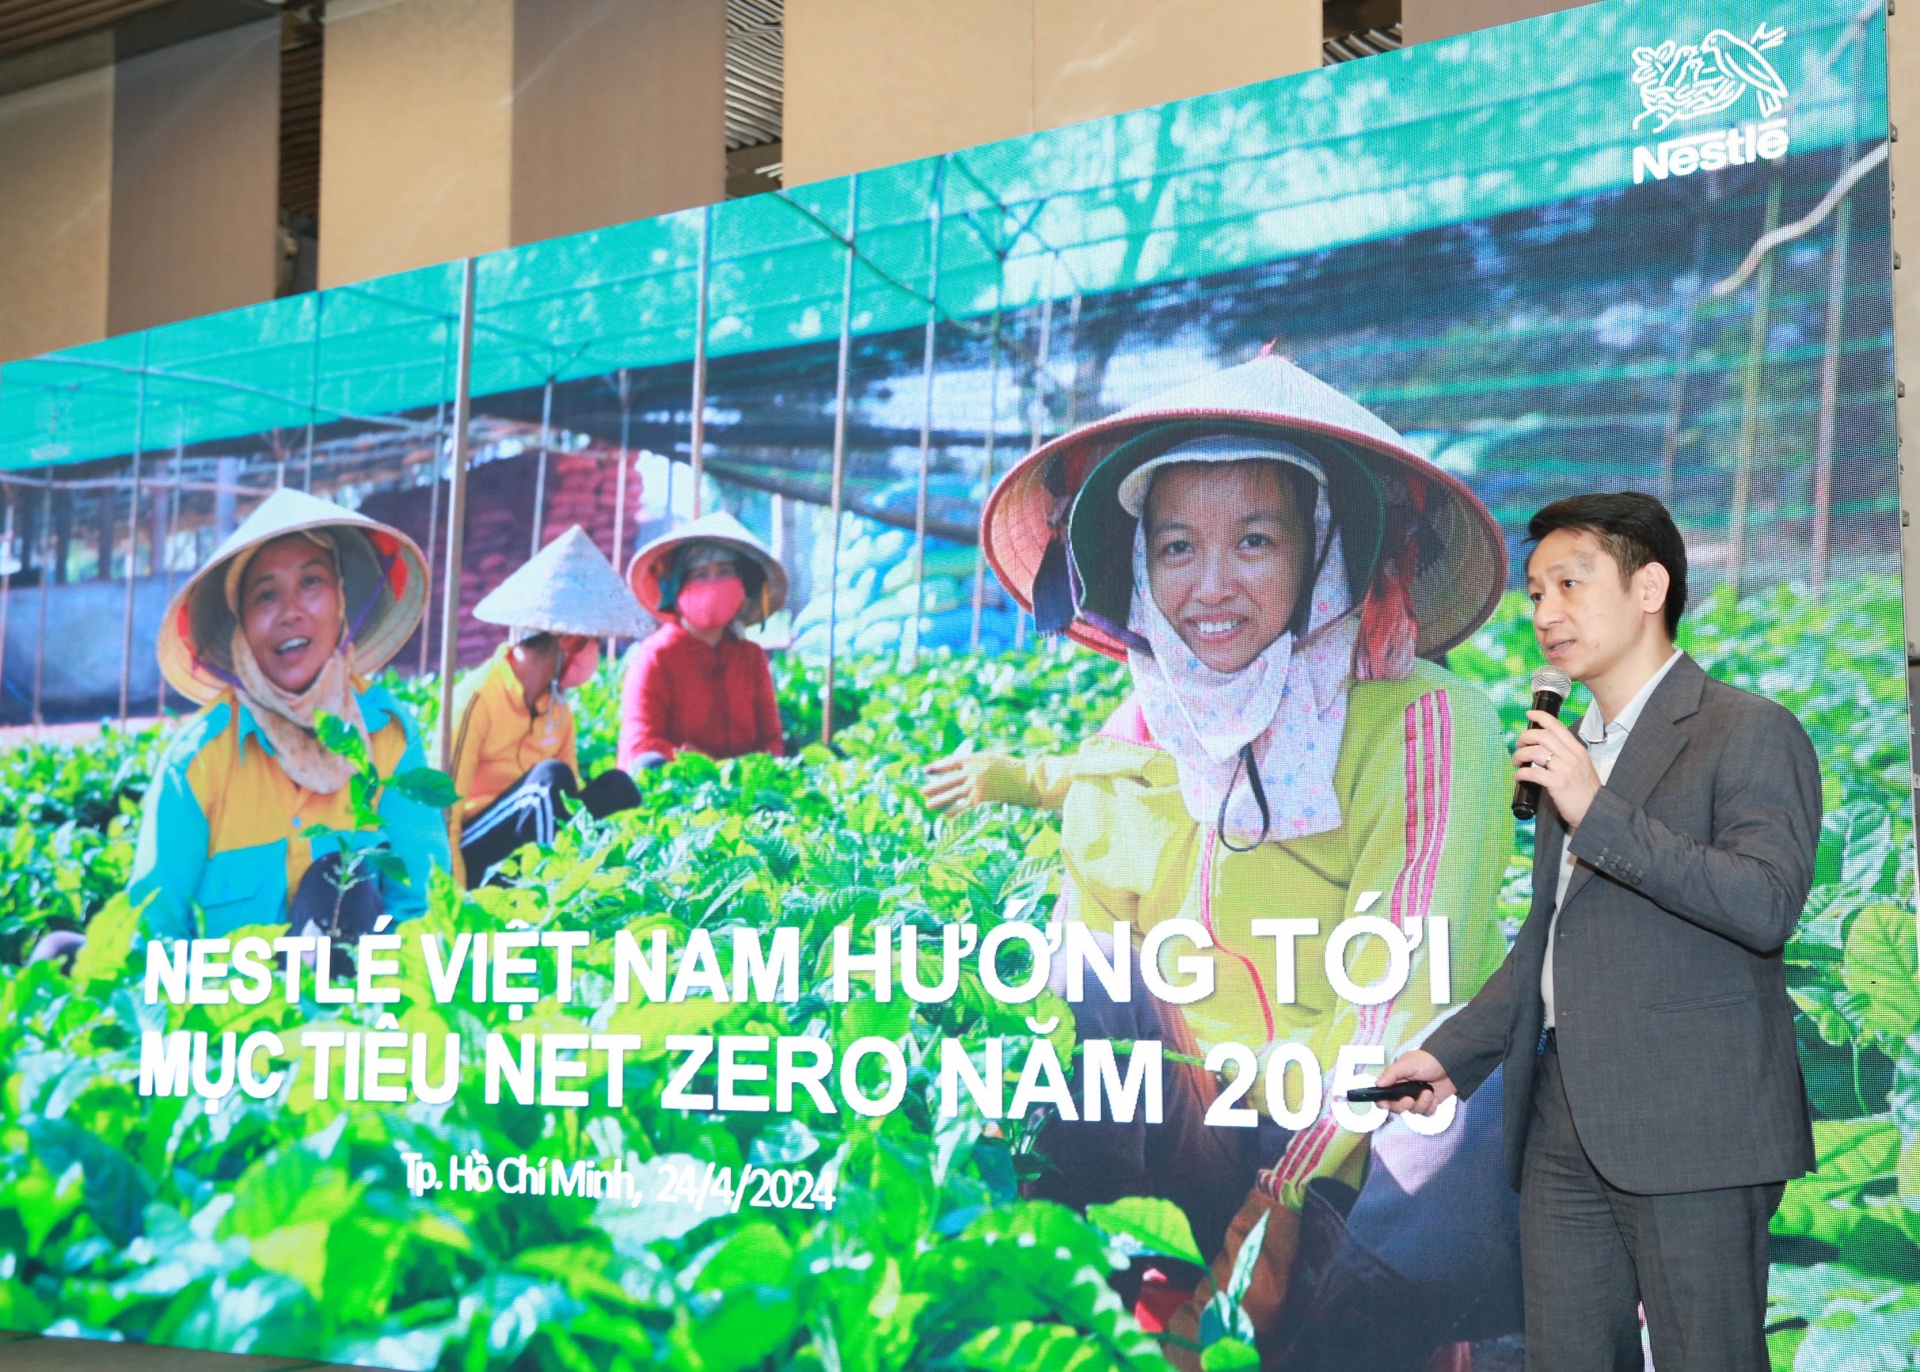 Nestlé Vietnam promotes initiatives on emission reduction